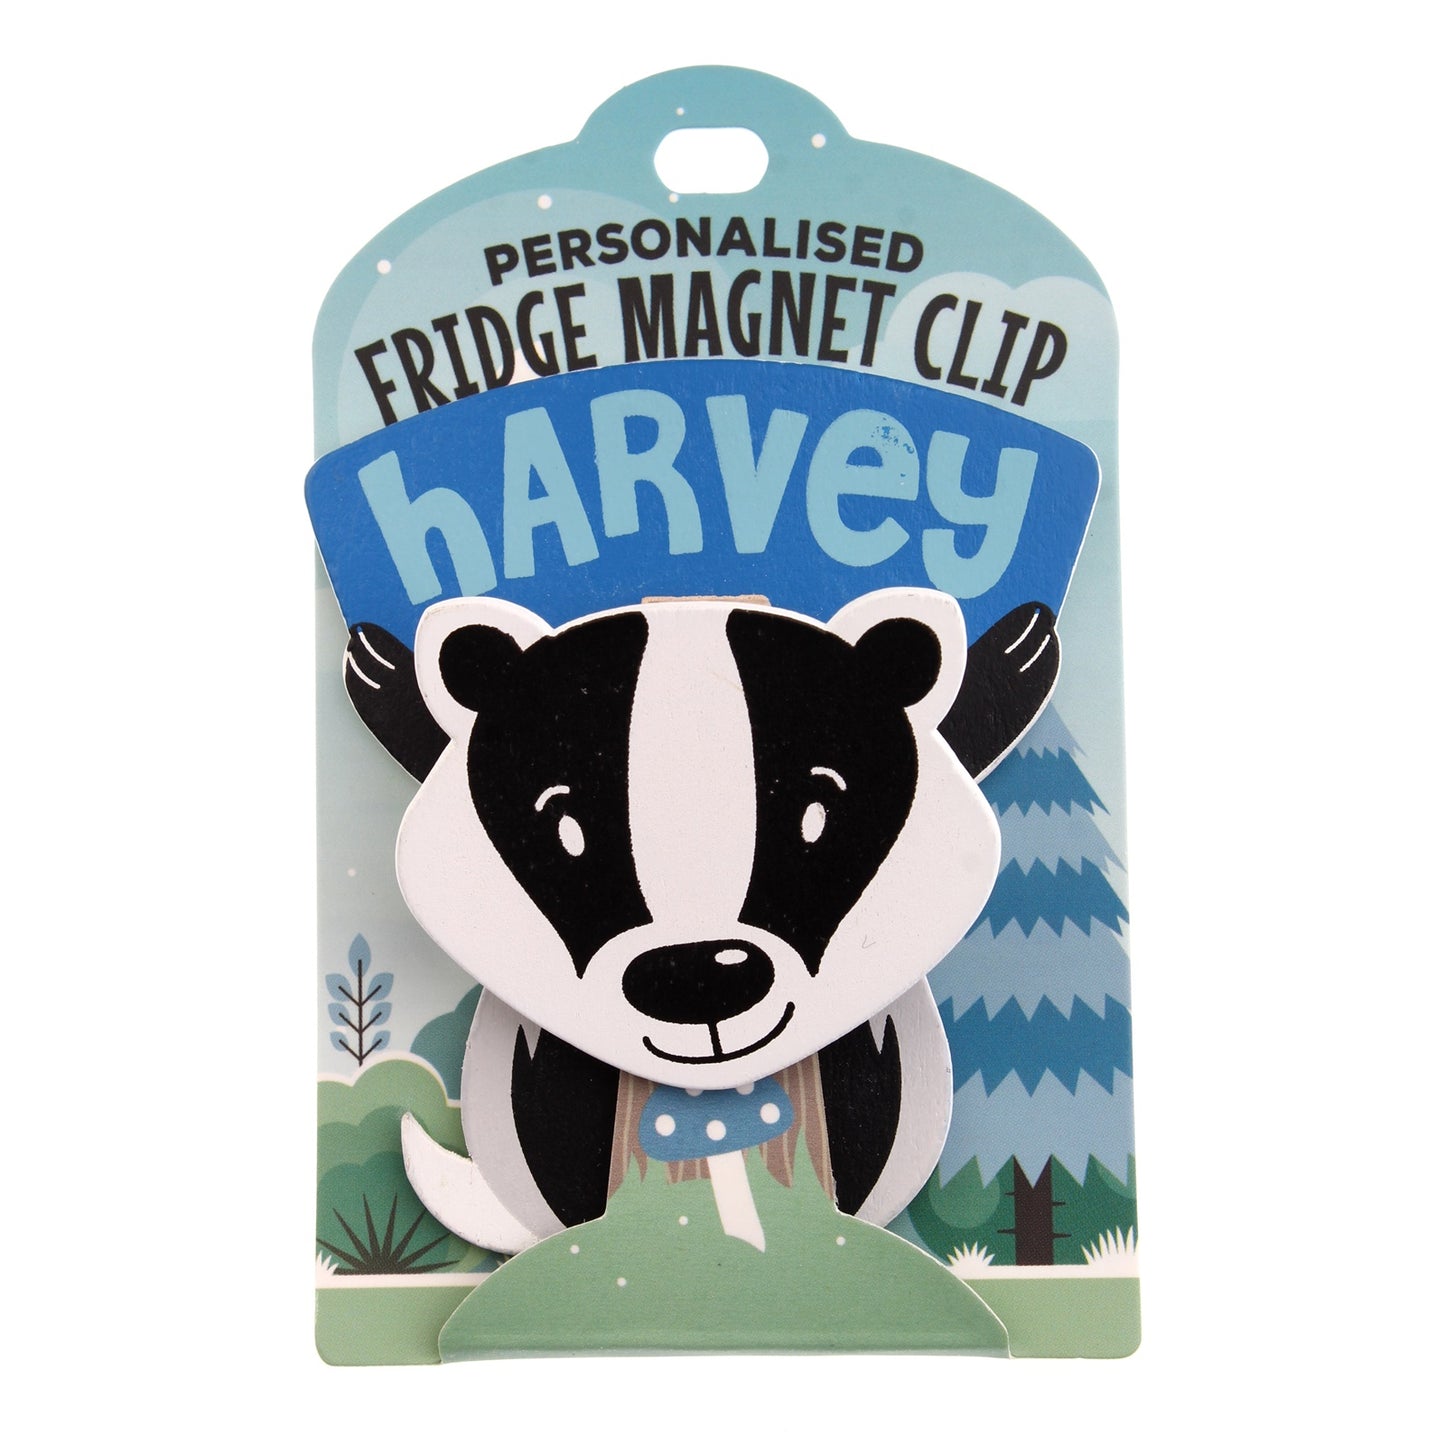 Fridge Magnet Clip Harvey